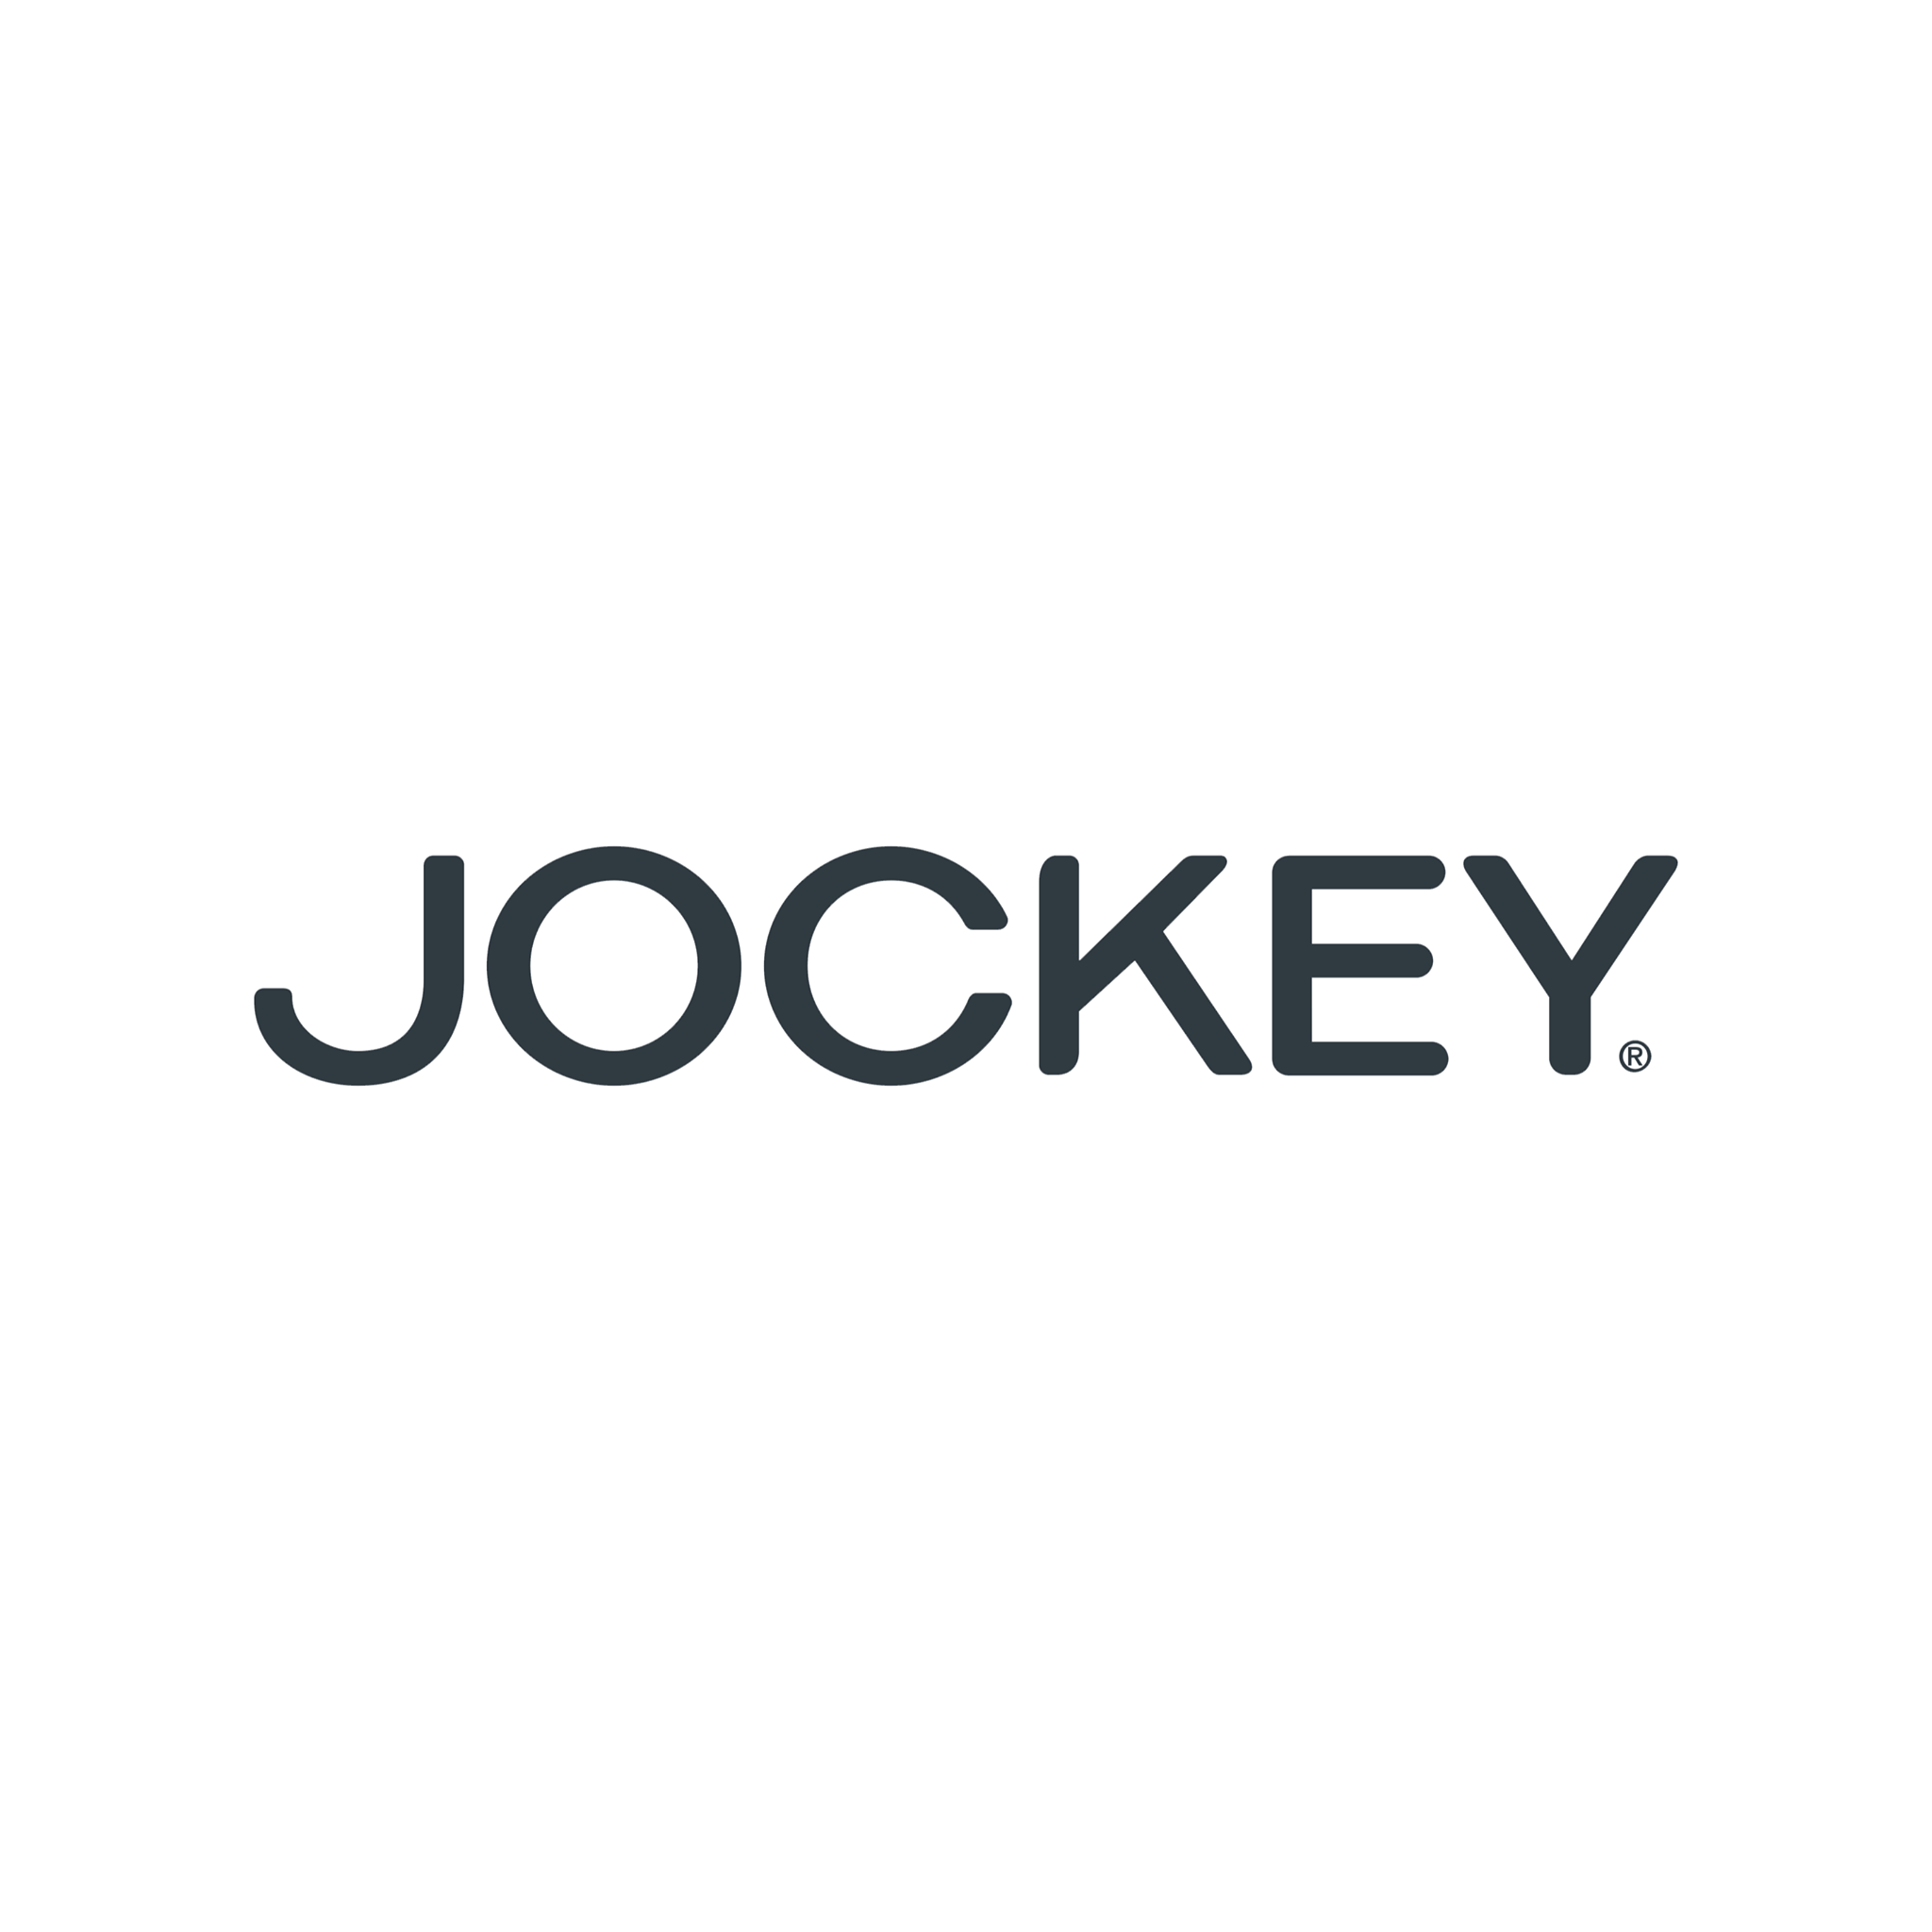 Jockey Outlet